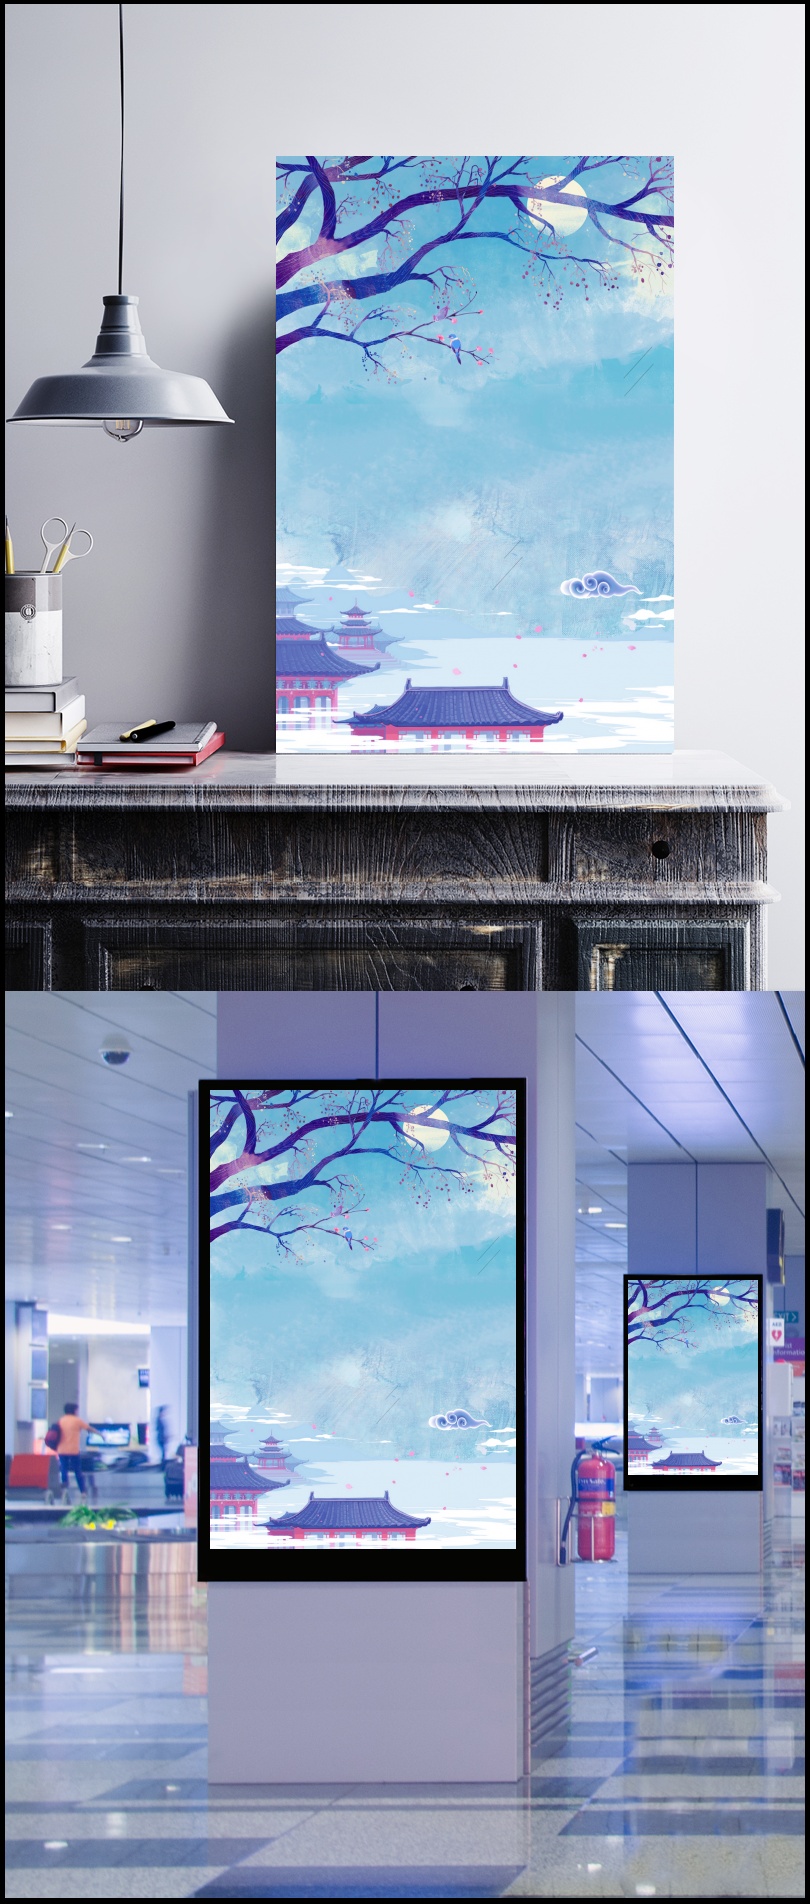 中国风蓝色二十四节气寒露创意海报